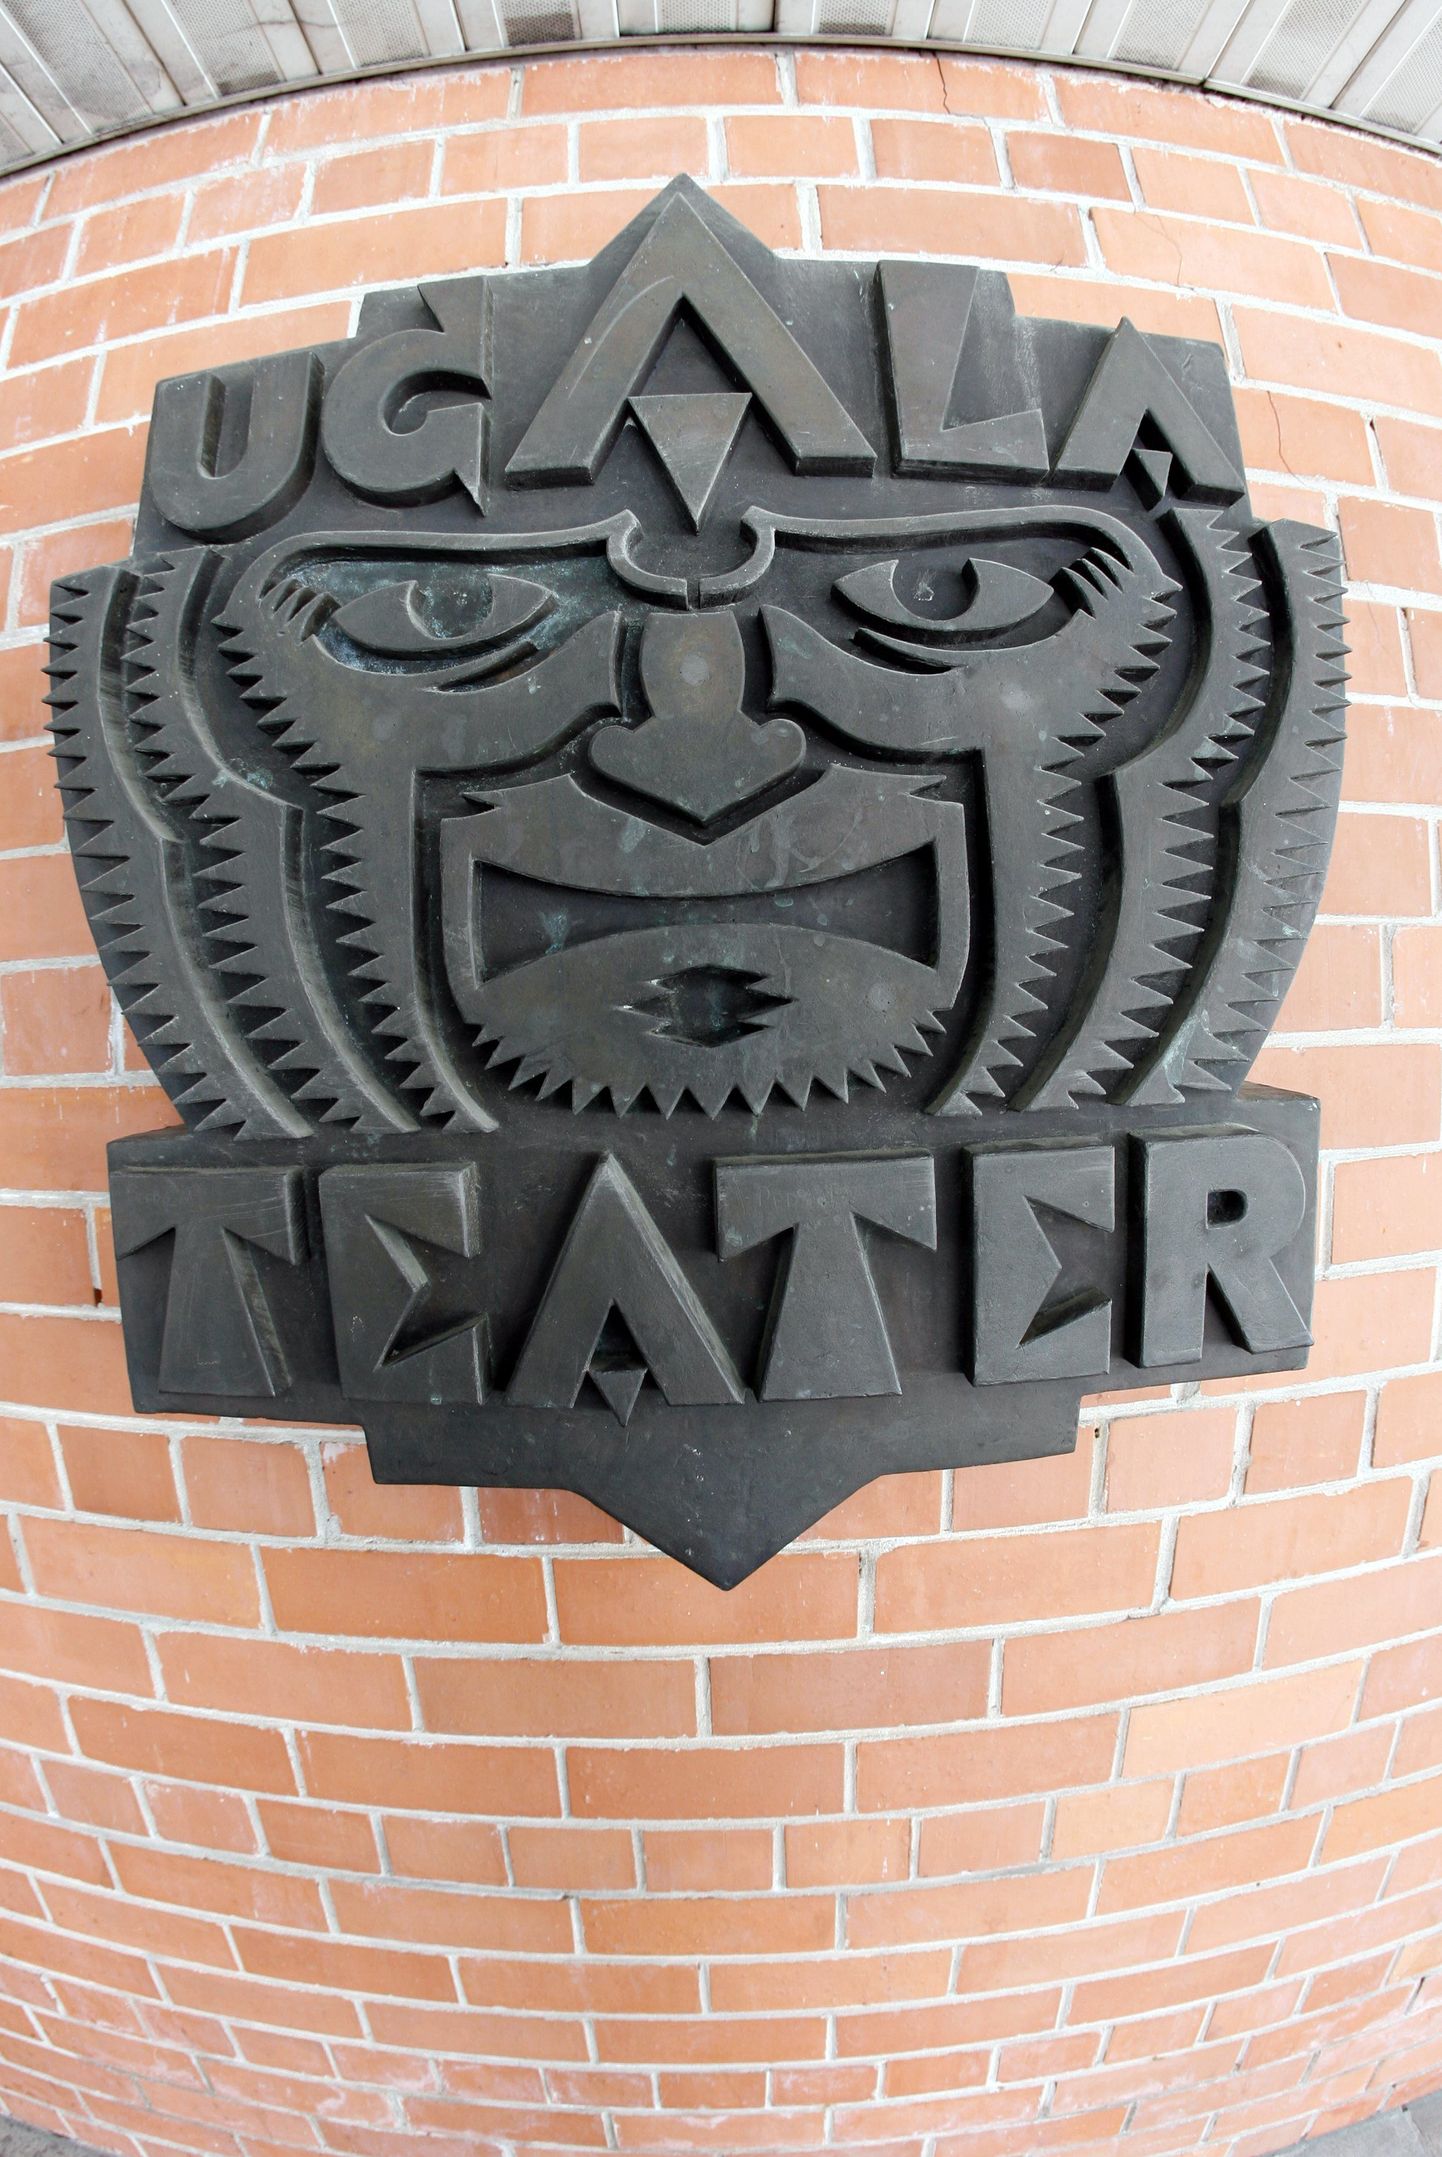 SAKALA01:   : VILJANDI, EESTI, 20MAR09
Teater Ugala. Ugala sümbol.
er/ Foto ELMO RIIG/ SAKALA